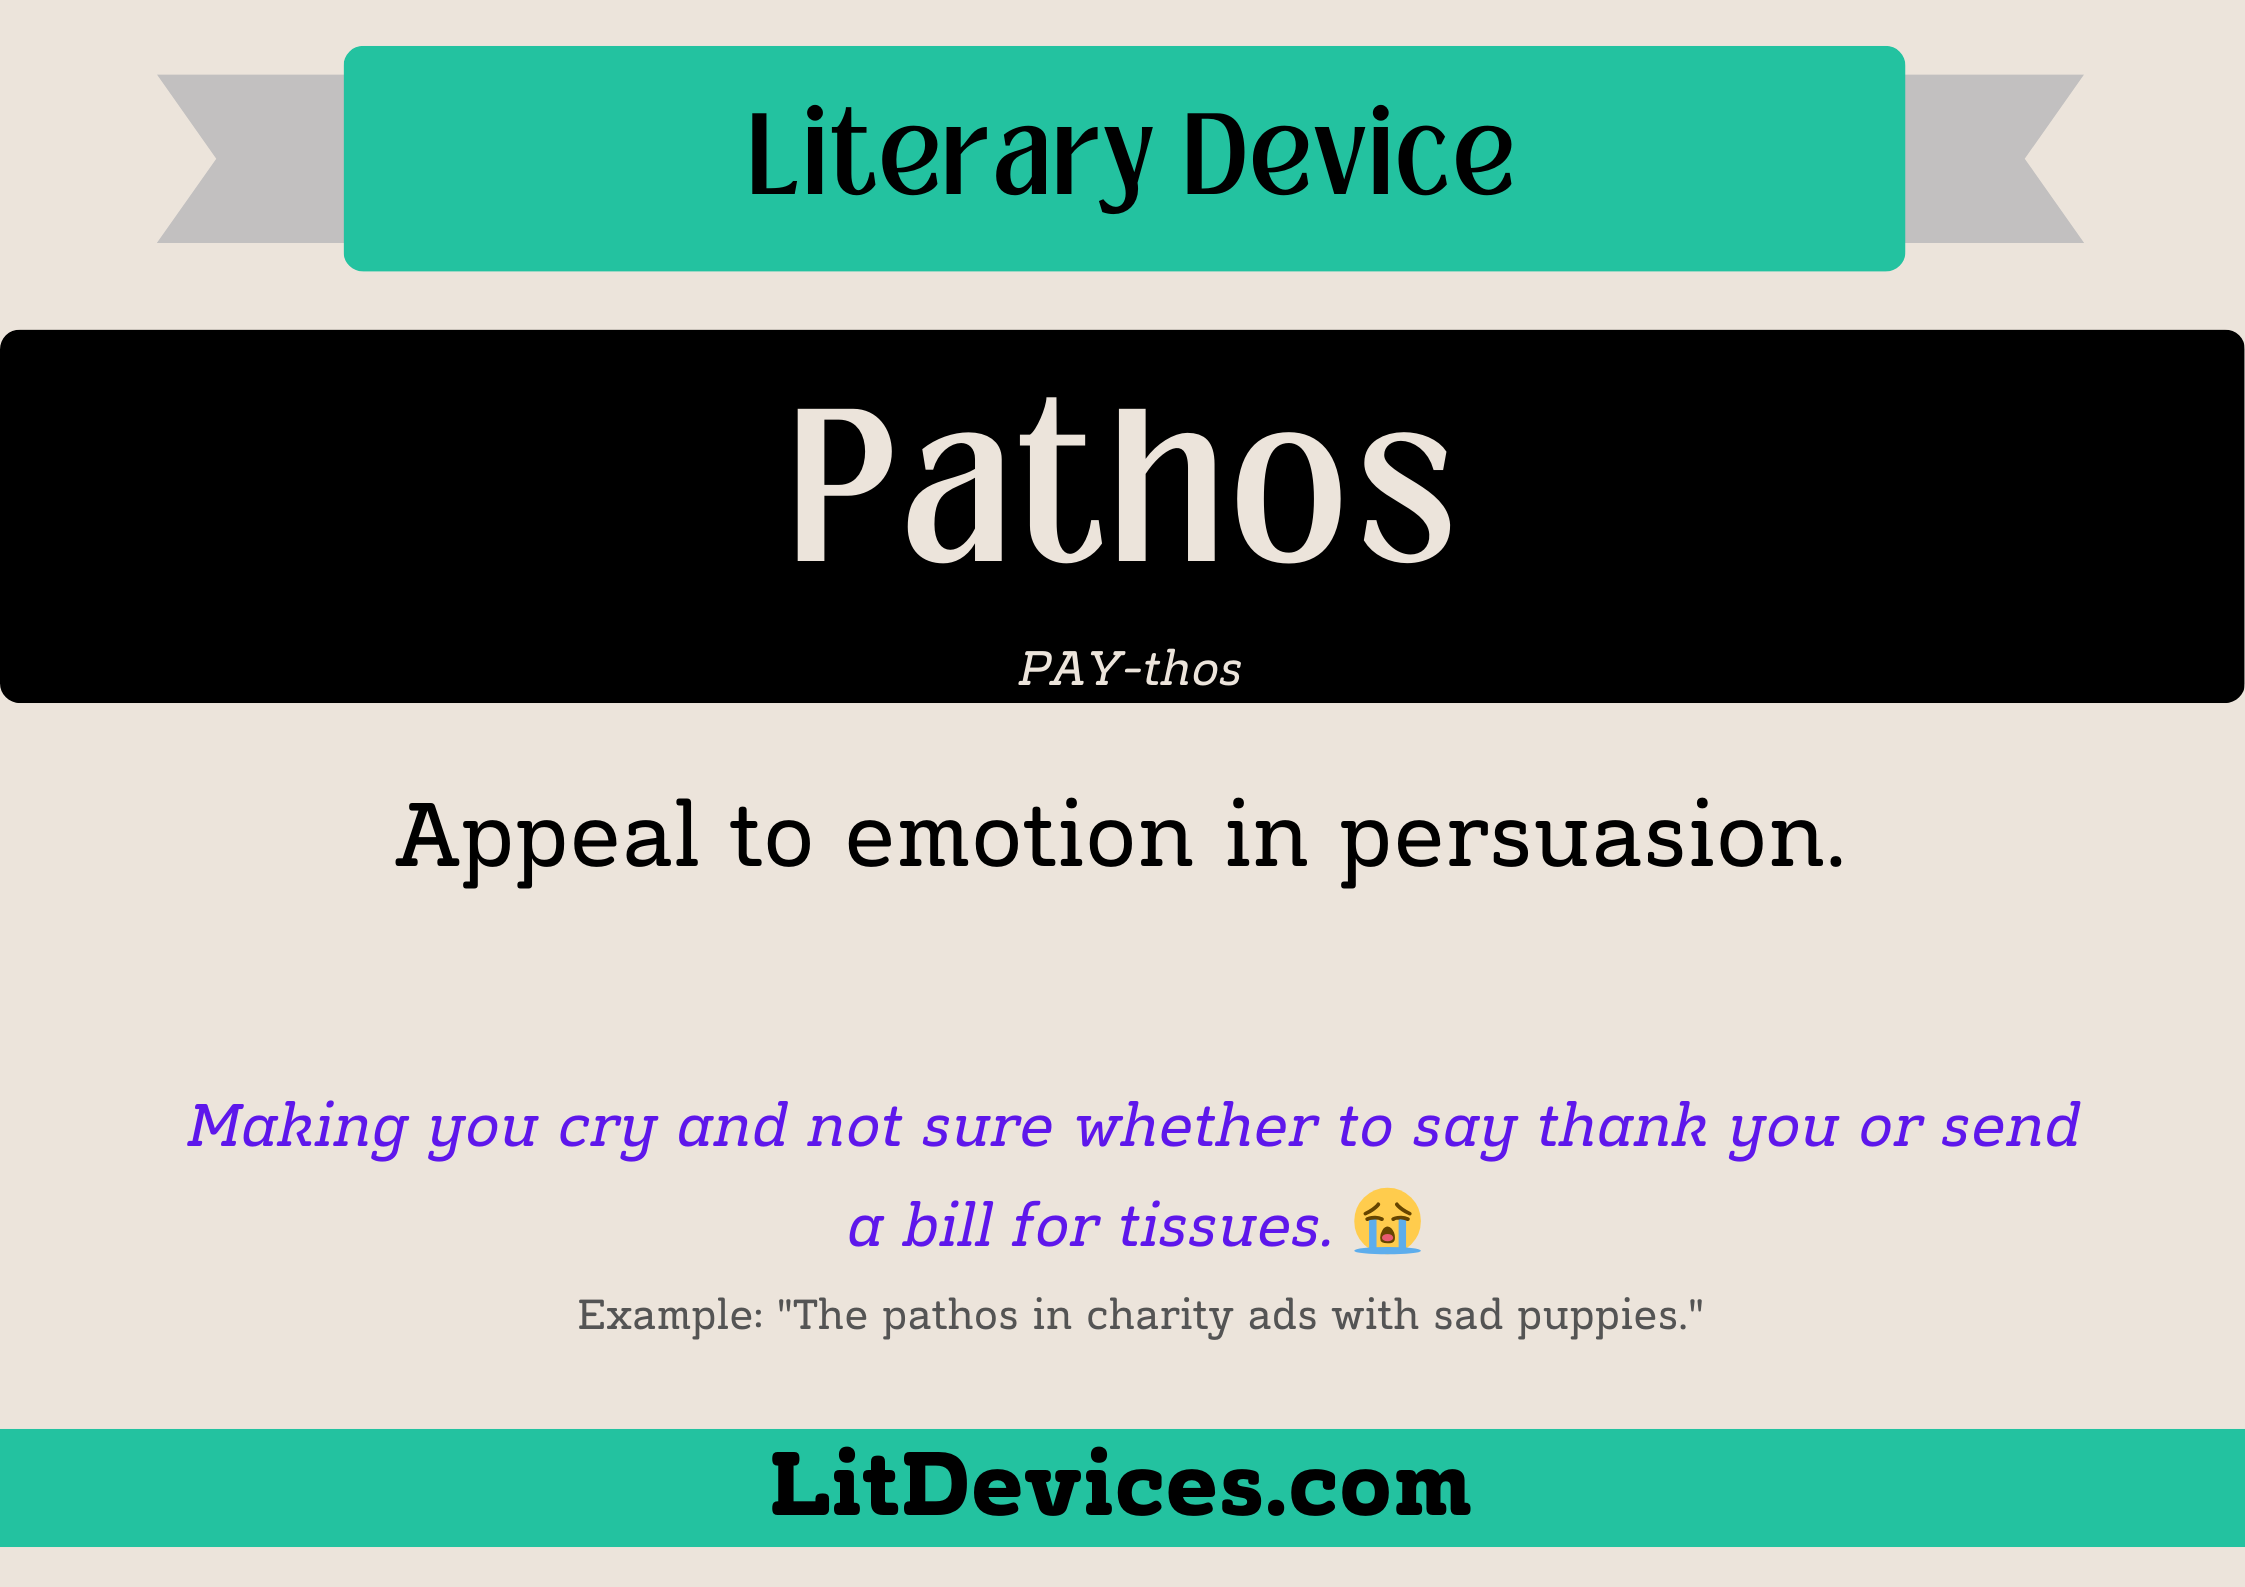 pathos literary device